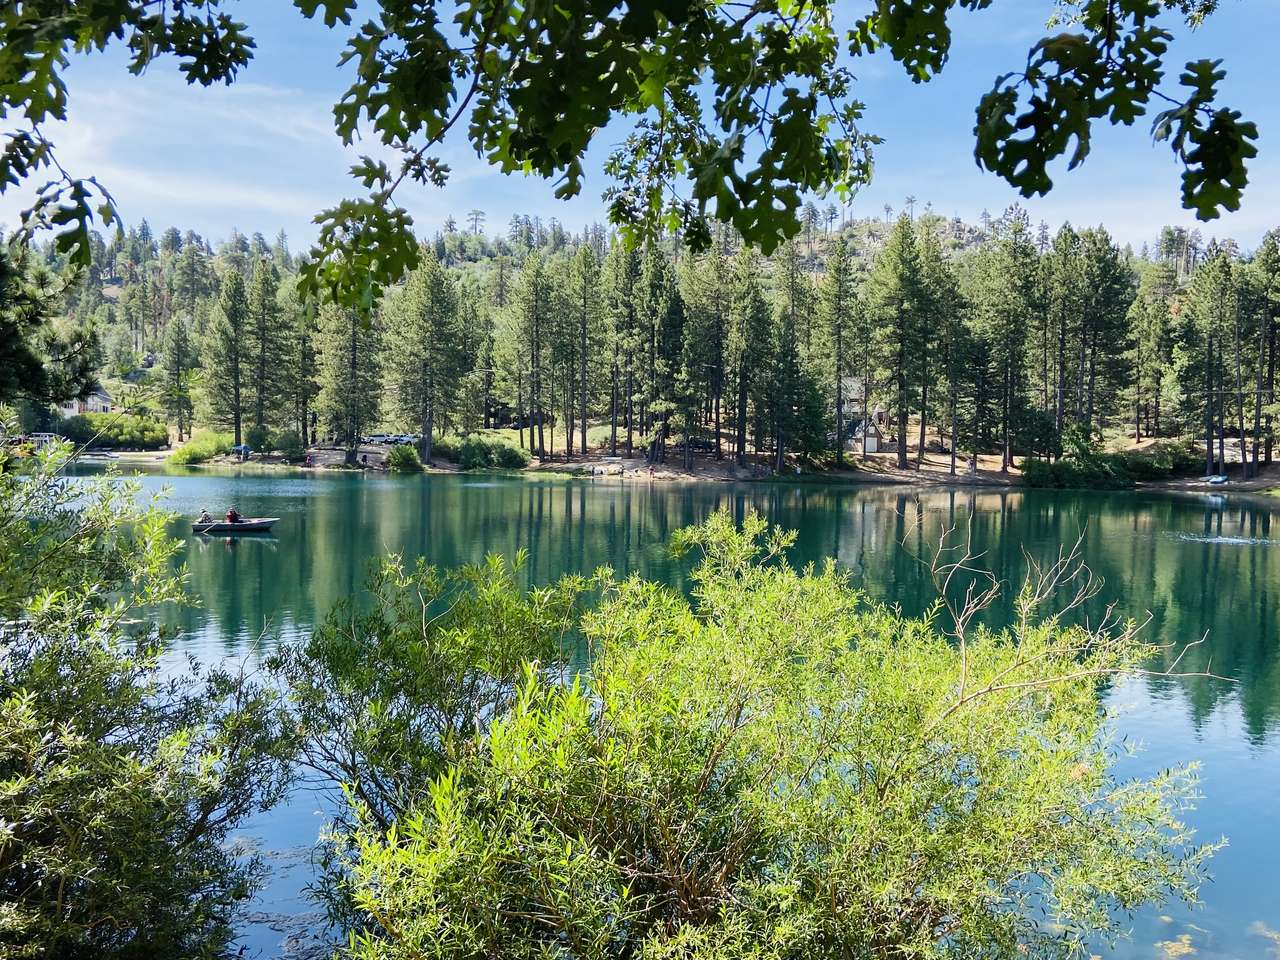 lago vale verde puzzle online a partir de fotografia